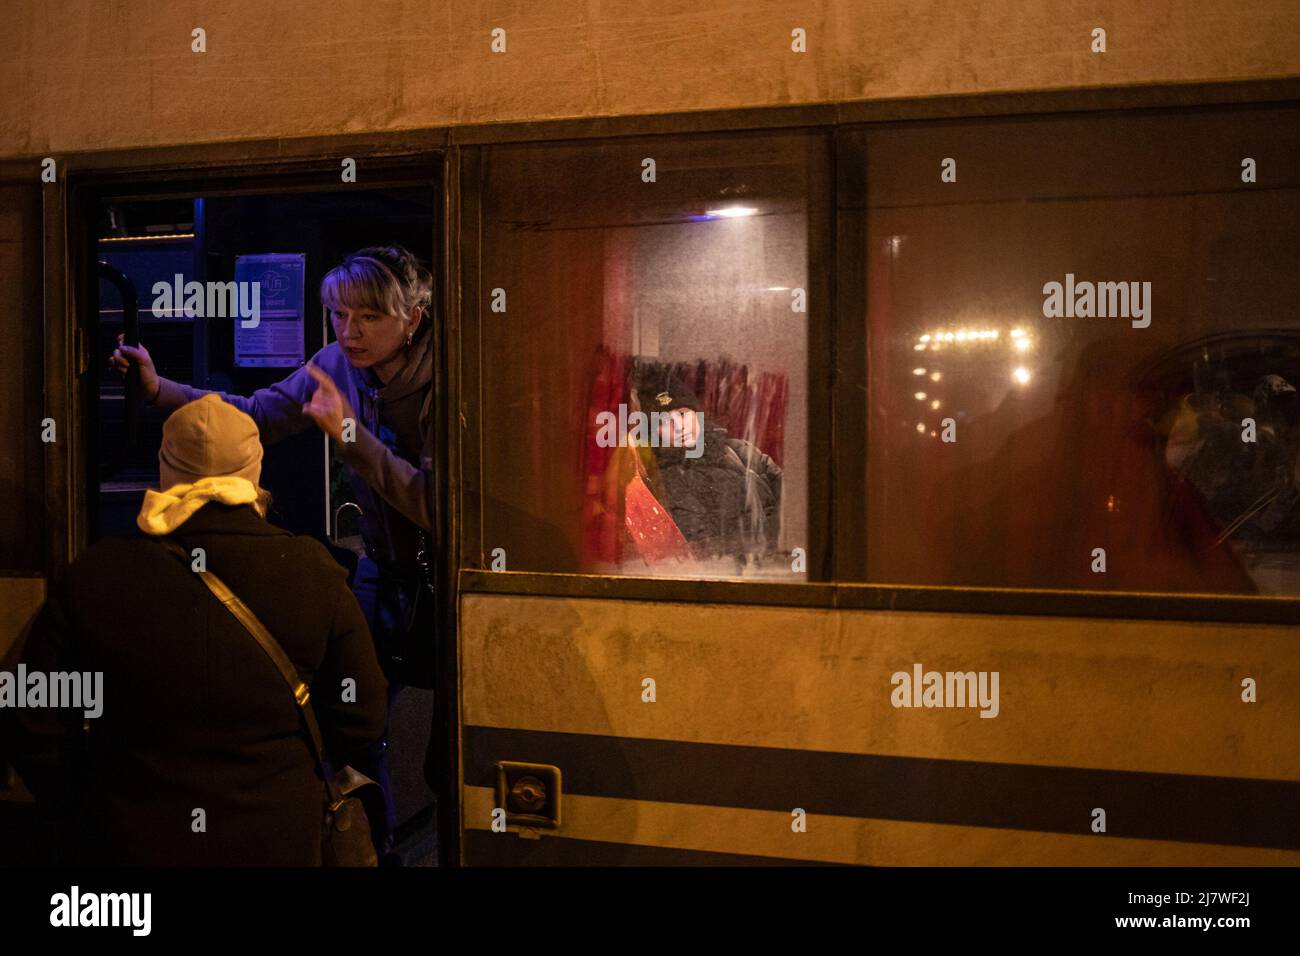 Simon Becker / le Pictorium - rifugiati ucraini al confine polacco - 5/3/2022 - Polonia / Hrebenne - persone in attesa in autobus dopo l'arrivo Foto Stock